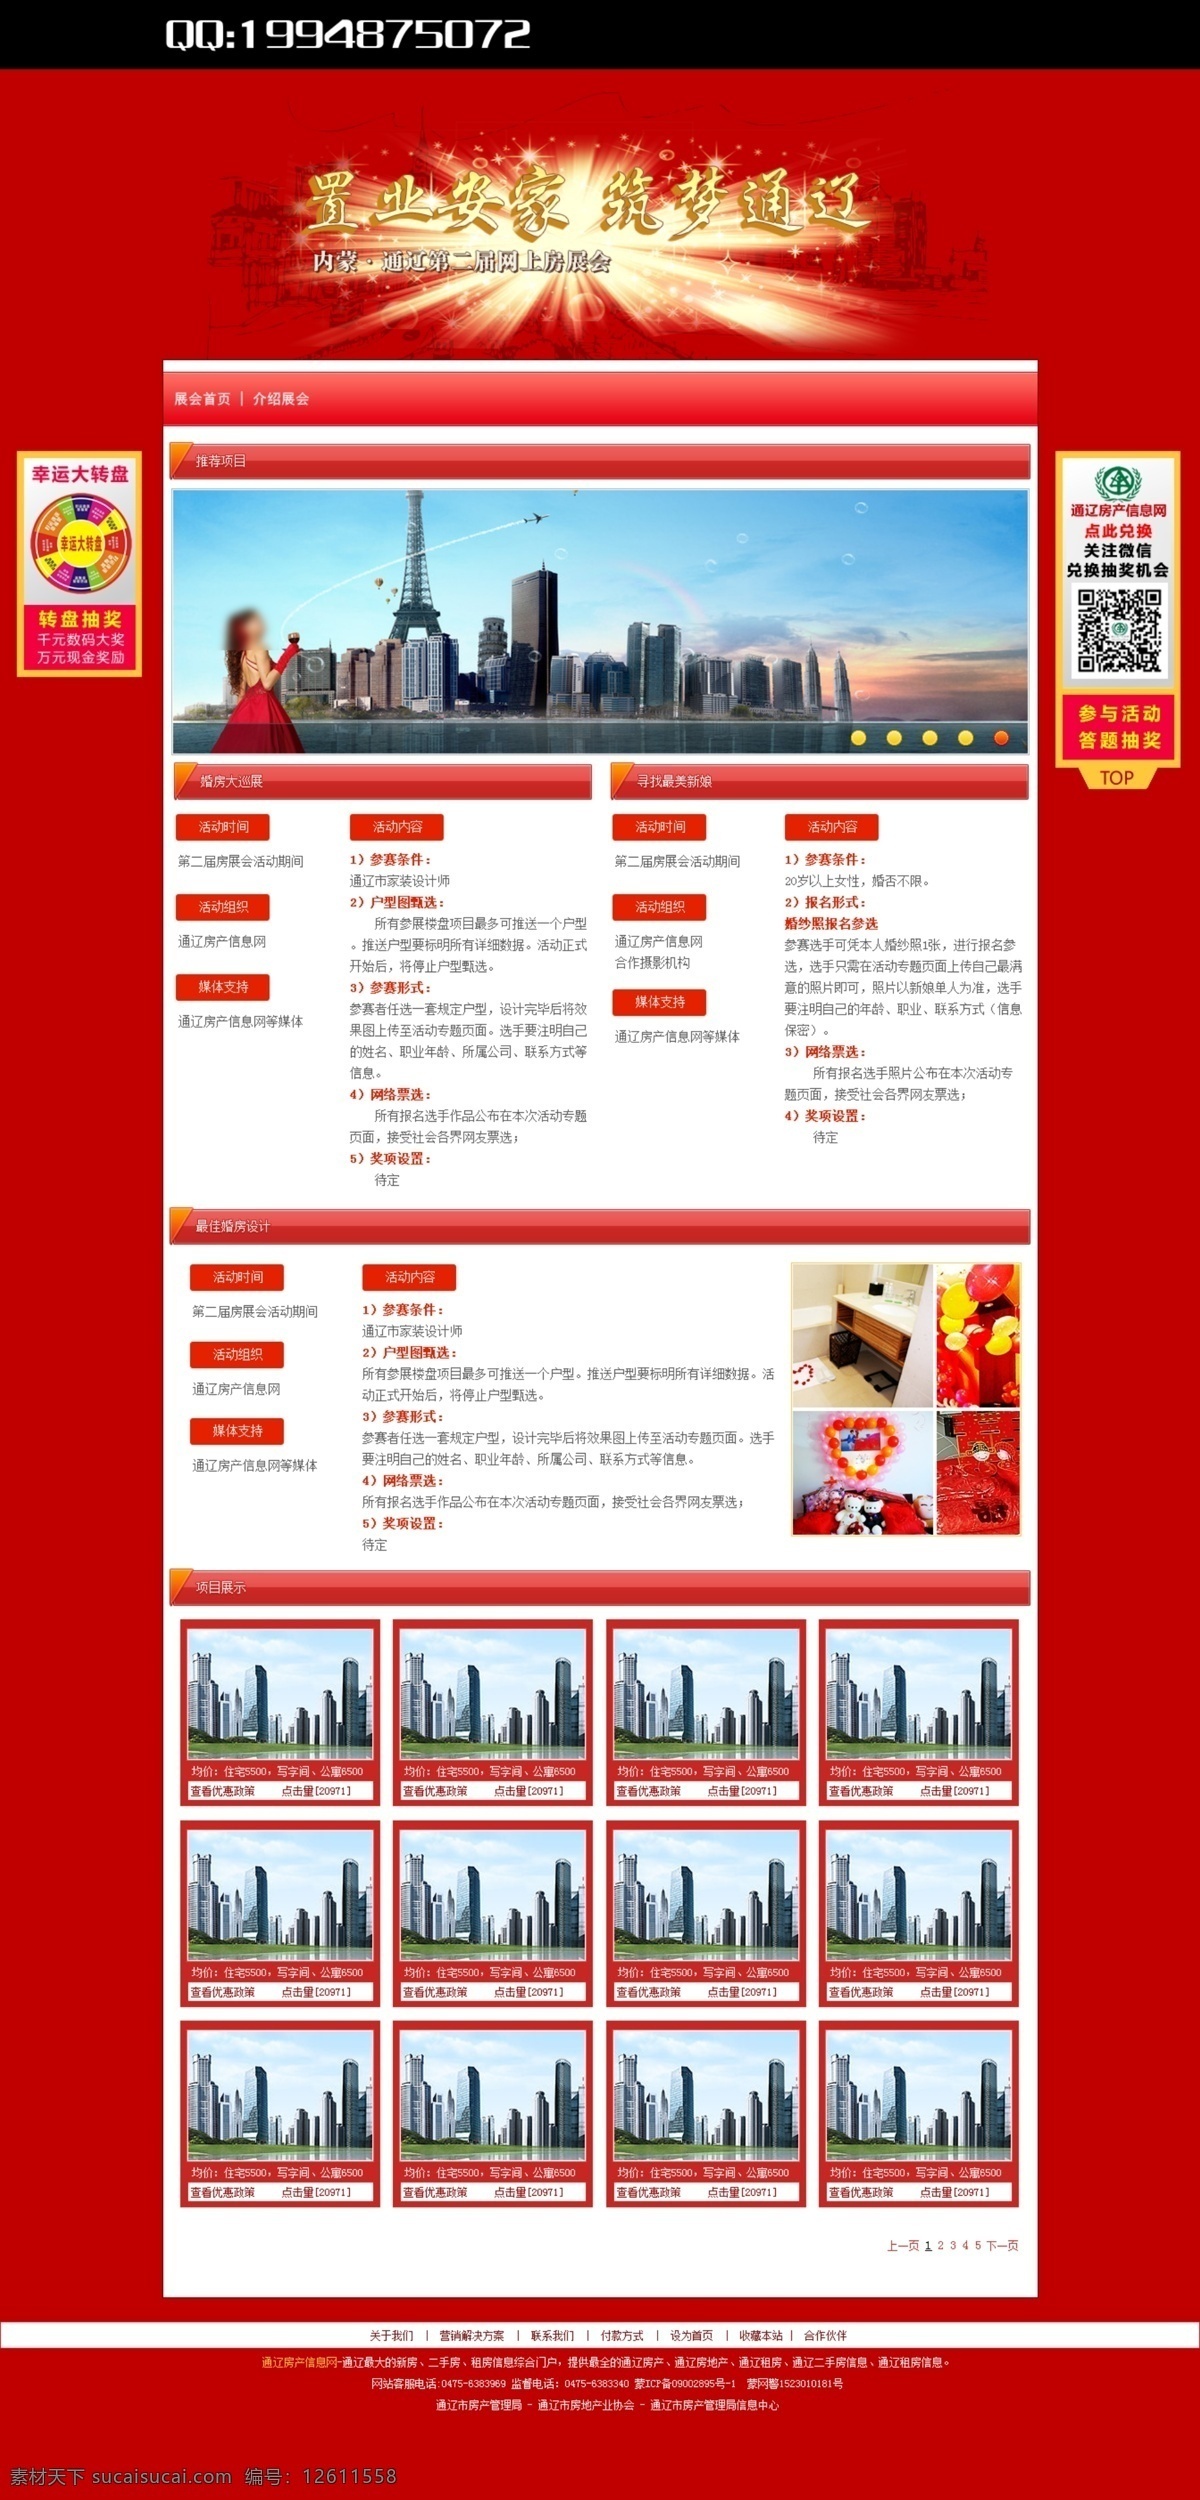 房产 网页模板 网页设计 网站设计 源文件 中文模板 专题 模板下载 房产专题设计 中文 模板 原创 网页素材